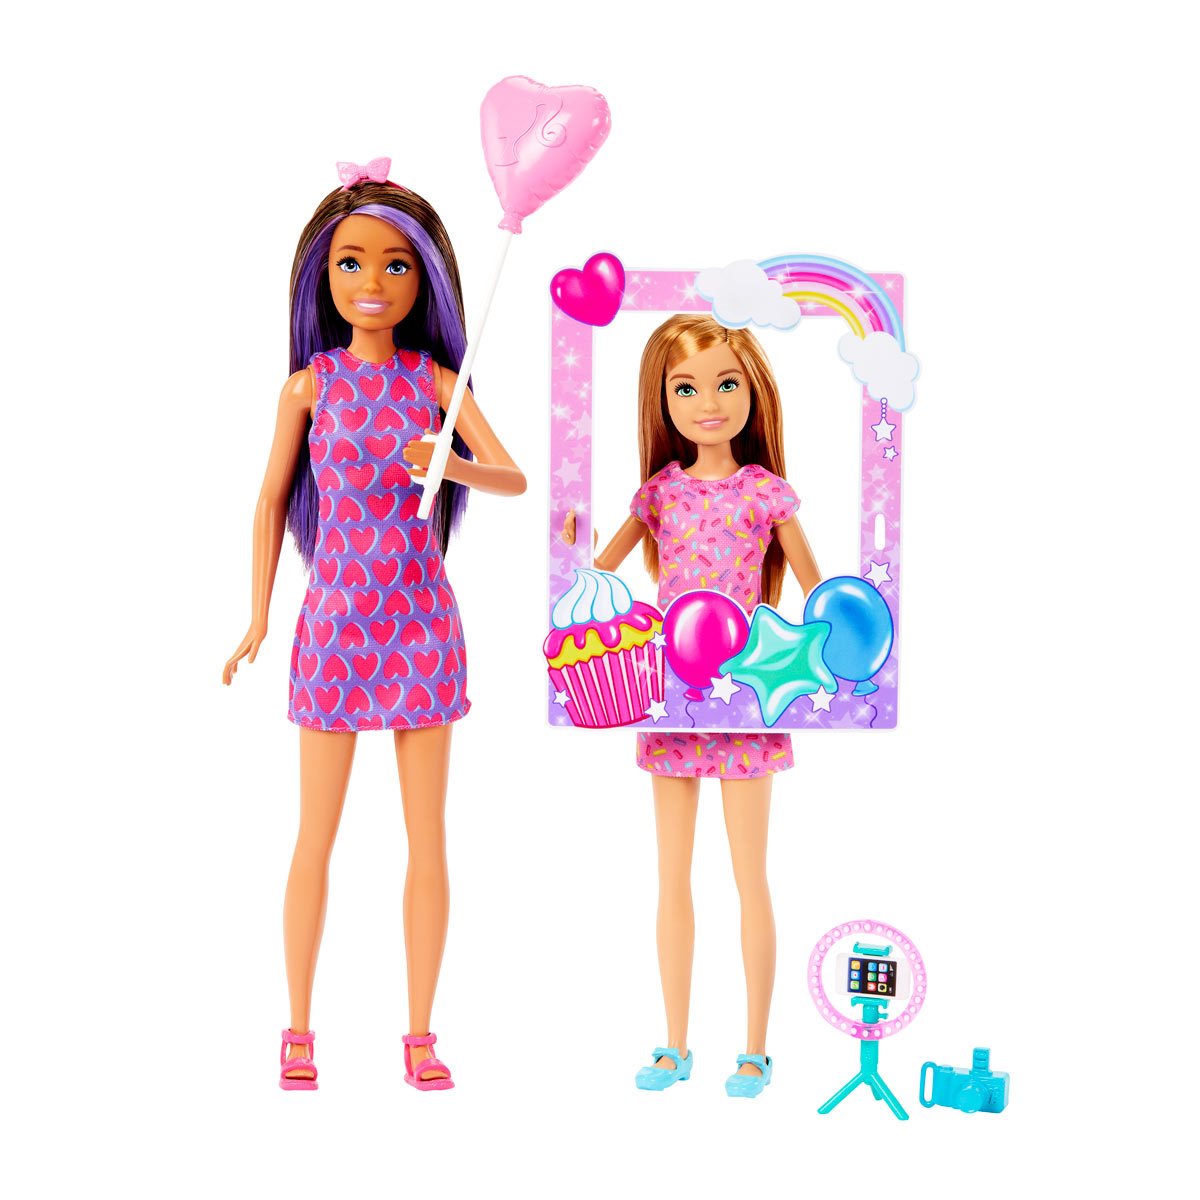 Tragisch bundel vals Barbie Celebration Fun Birthday Capsule Dolls 2-Pack